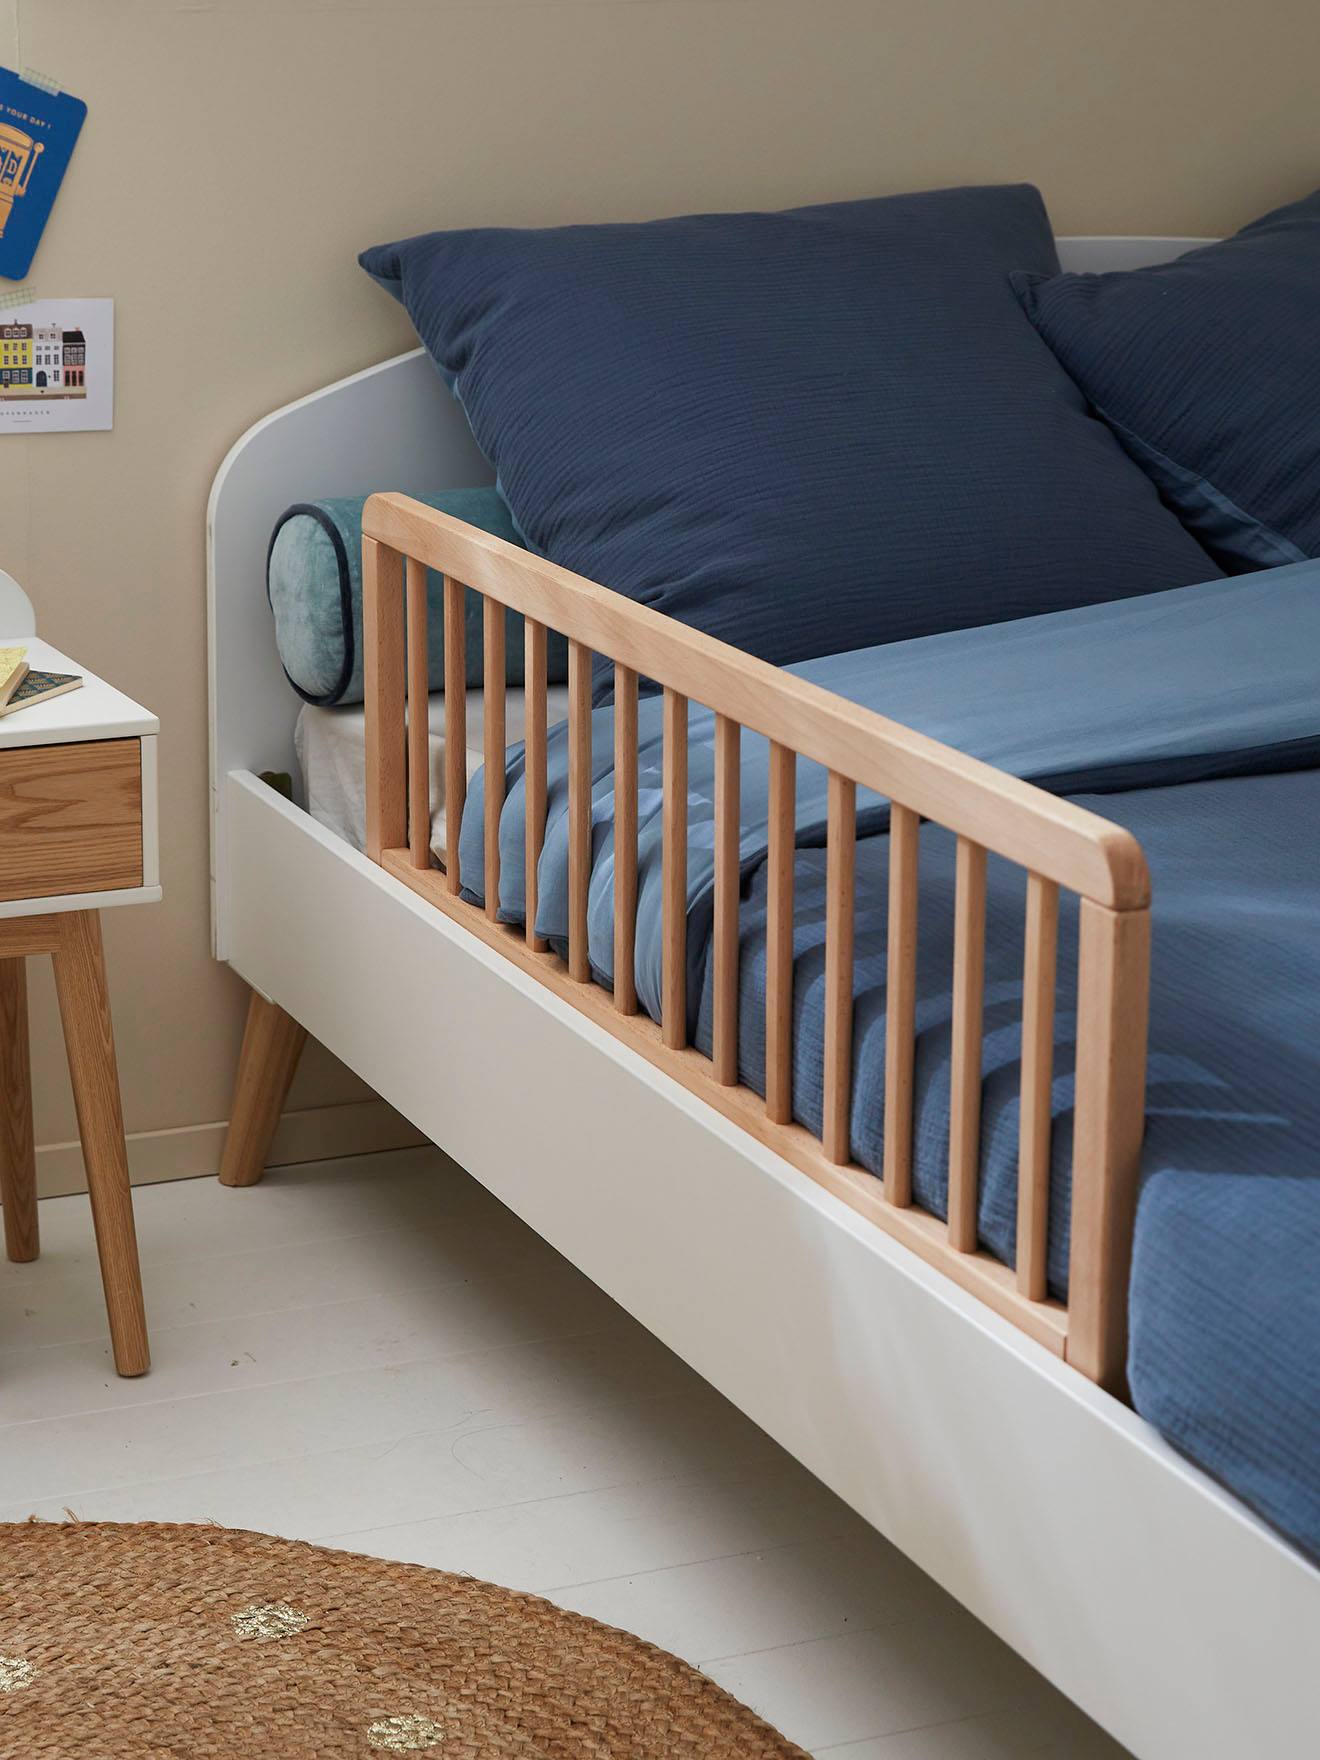 Barrière de lit en bois Hêtre Brut de Formula Baby, Barrières de lit :  Aubert